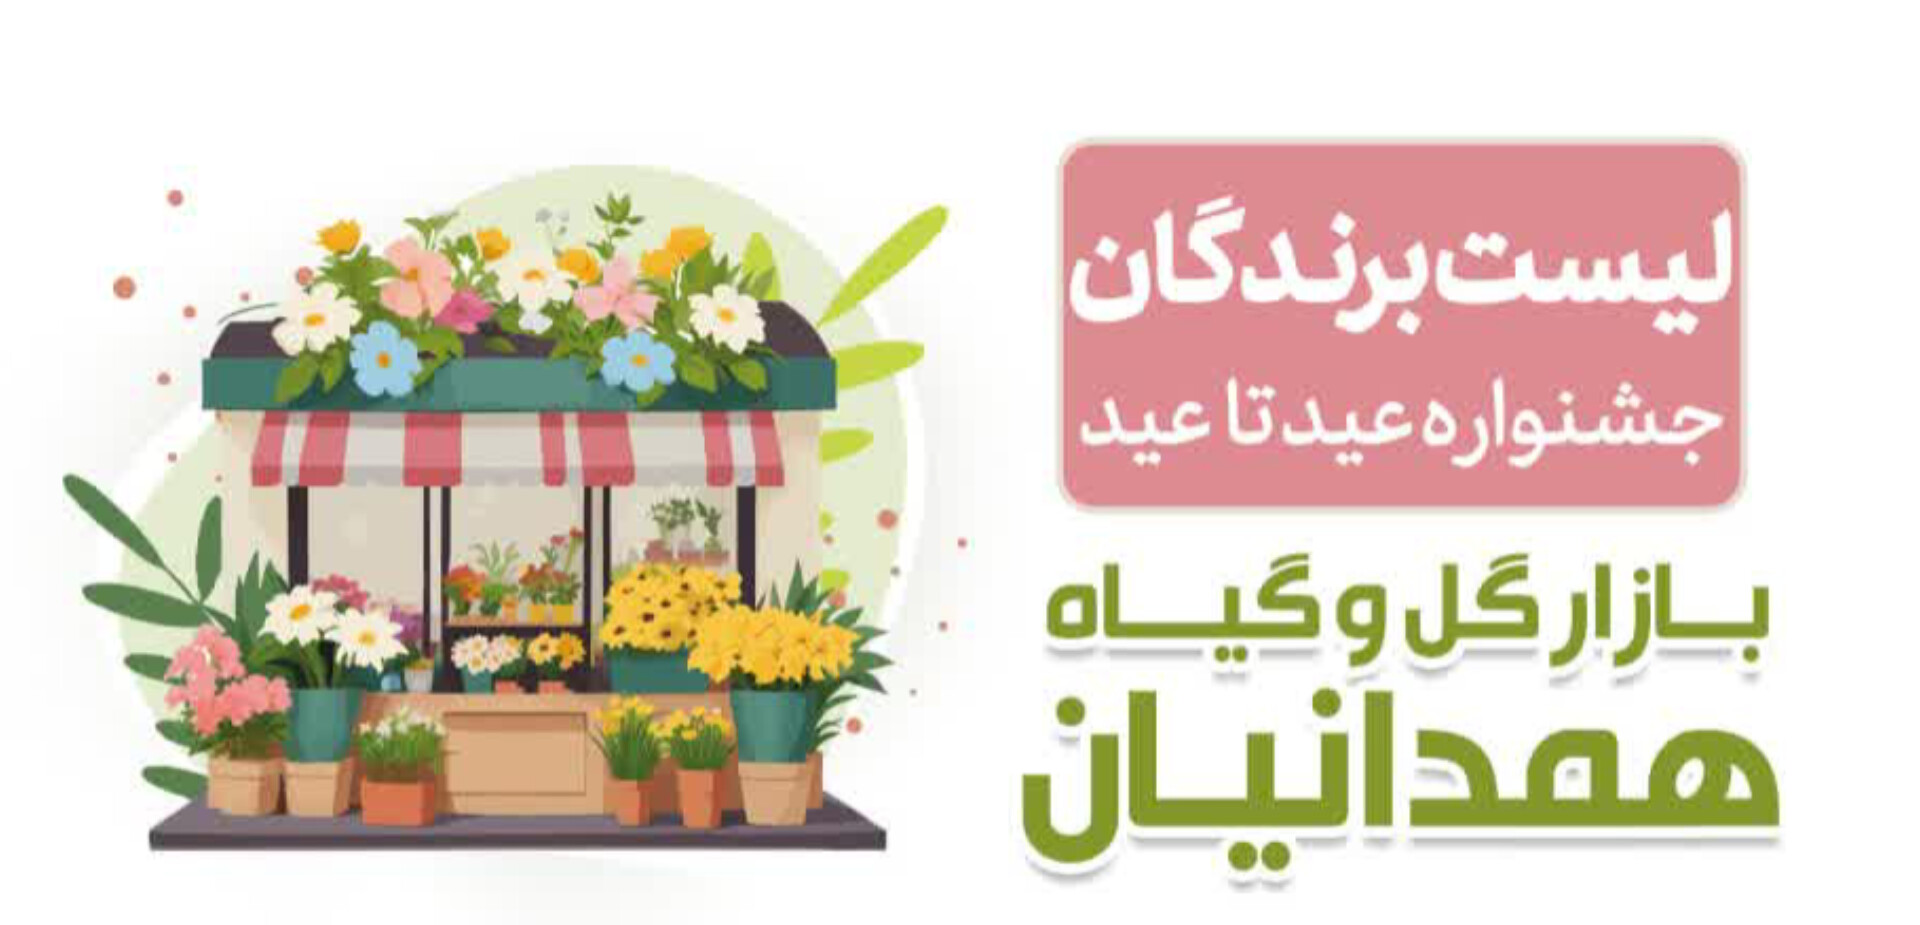 برندگان جشنواره عید تا عید بازار گل و گیاه همدانیان